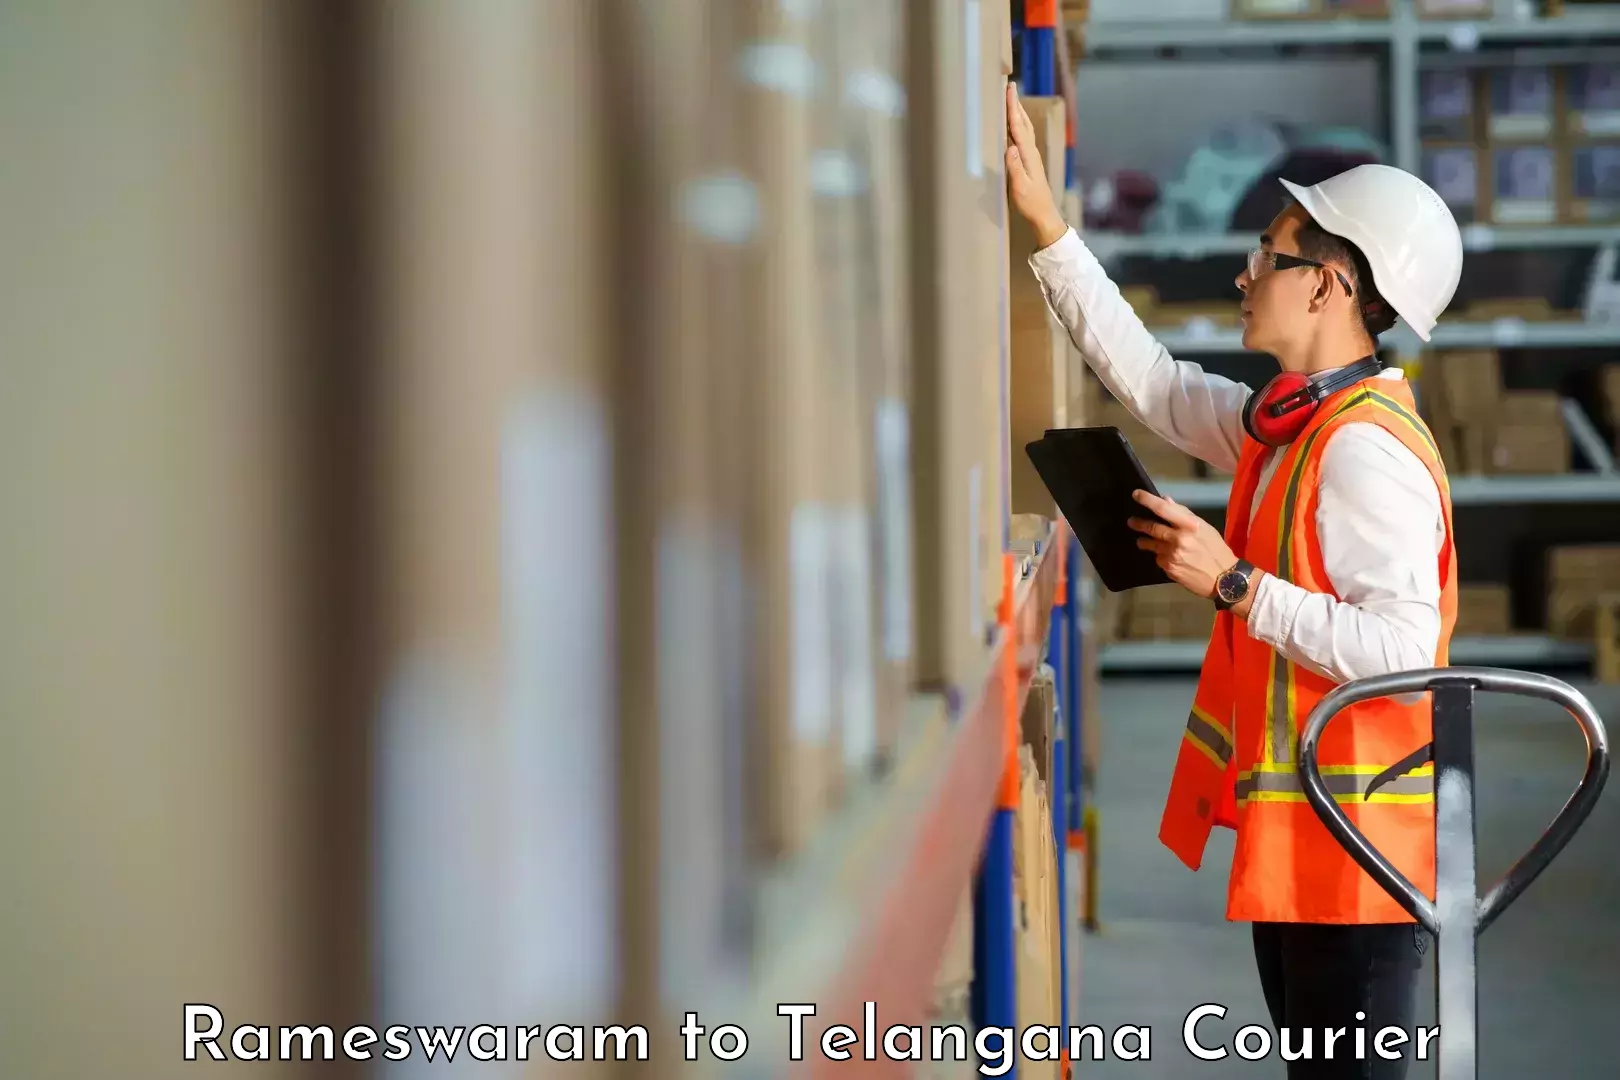 Next-generation courier services Rameswaram to Suryapet